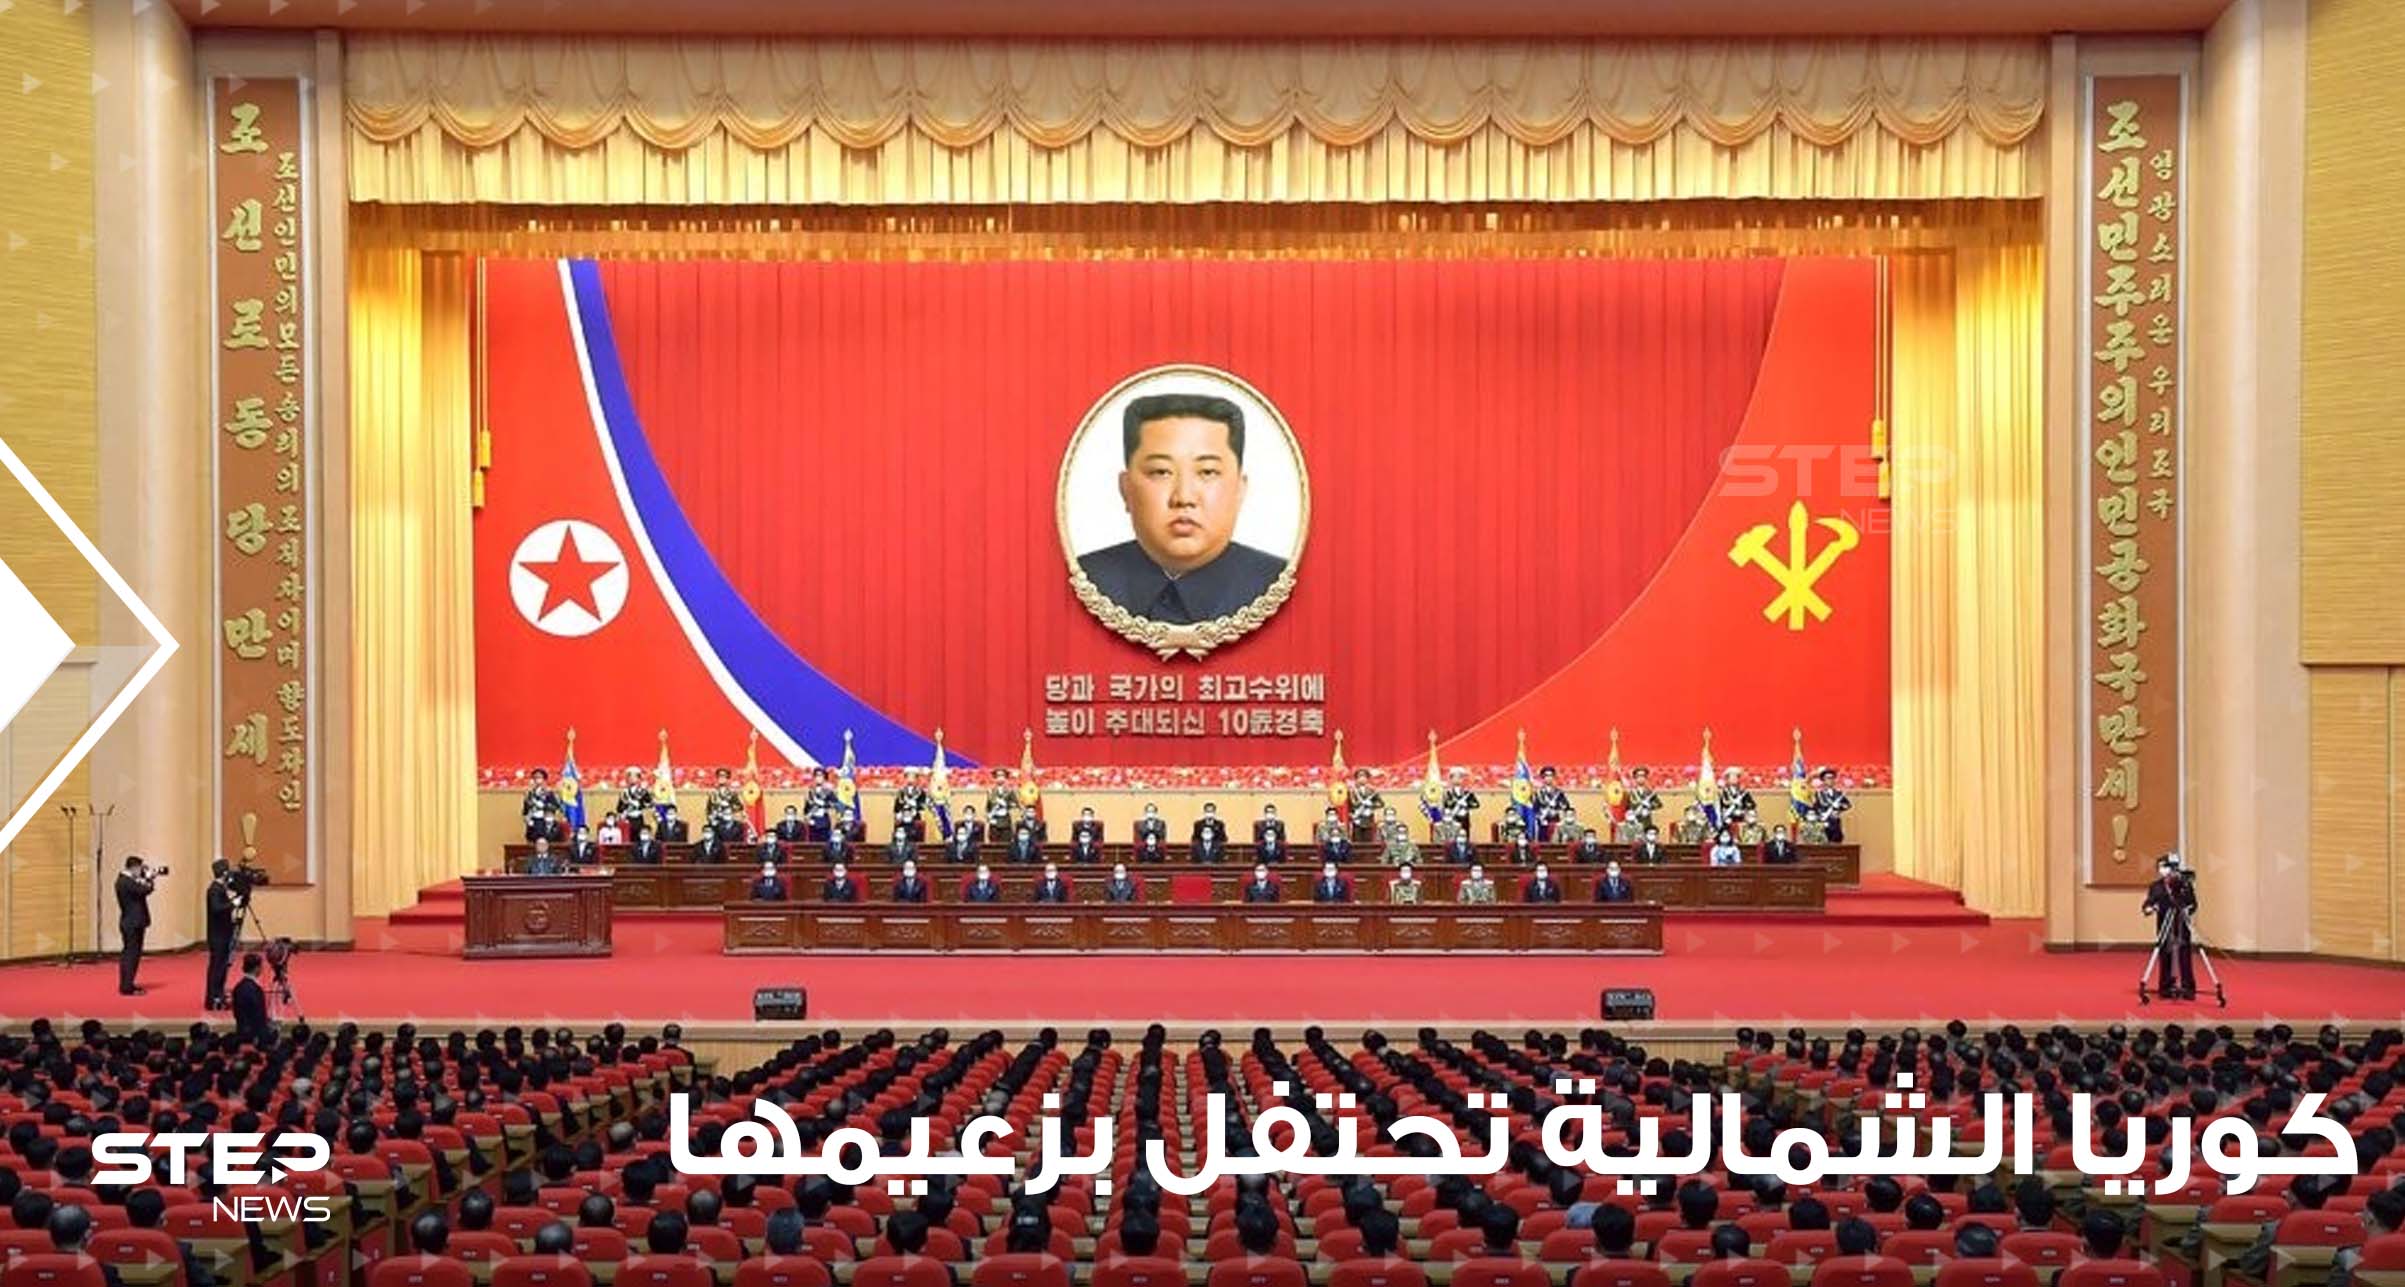 شاهد|| بمناسبة مرور عشر سنوات على توليه السلطة.. كوريا الشمالية تكشف النقاب عن صورة جديدة لزعيمها